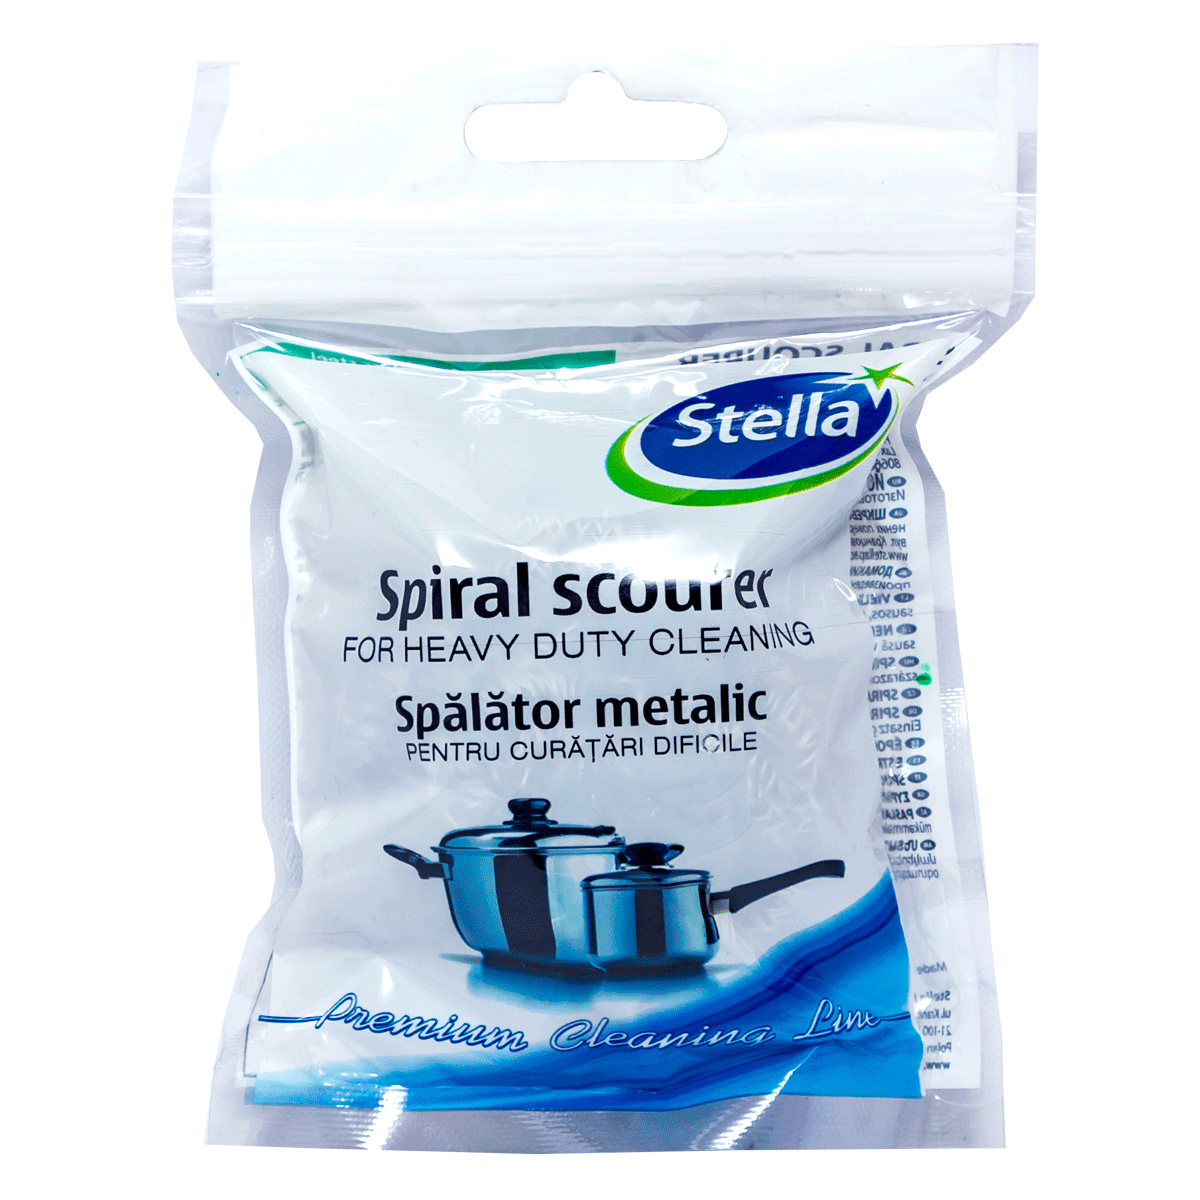 Spiral dishwashing liquid Stella 2610